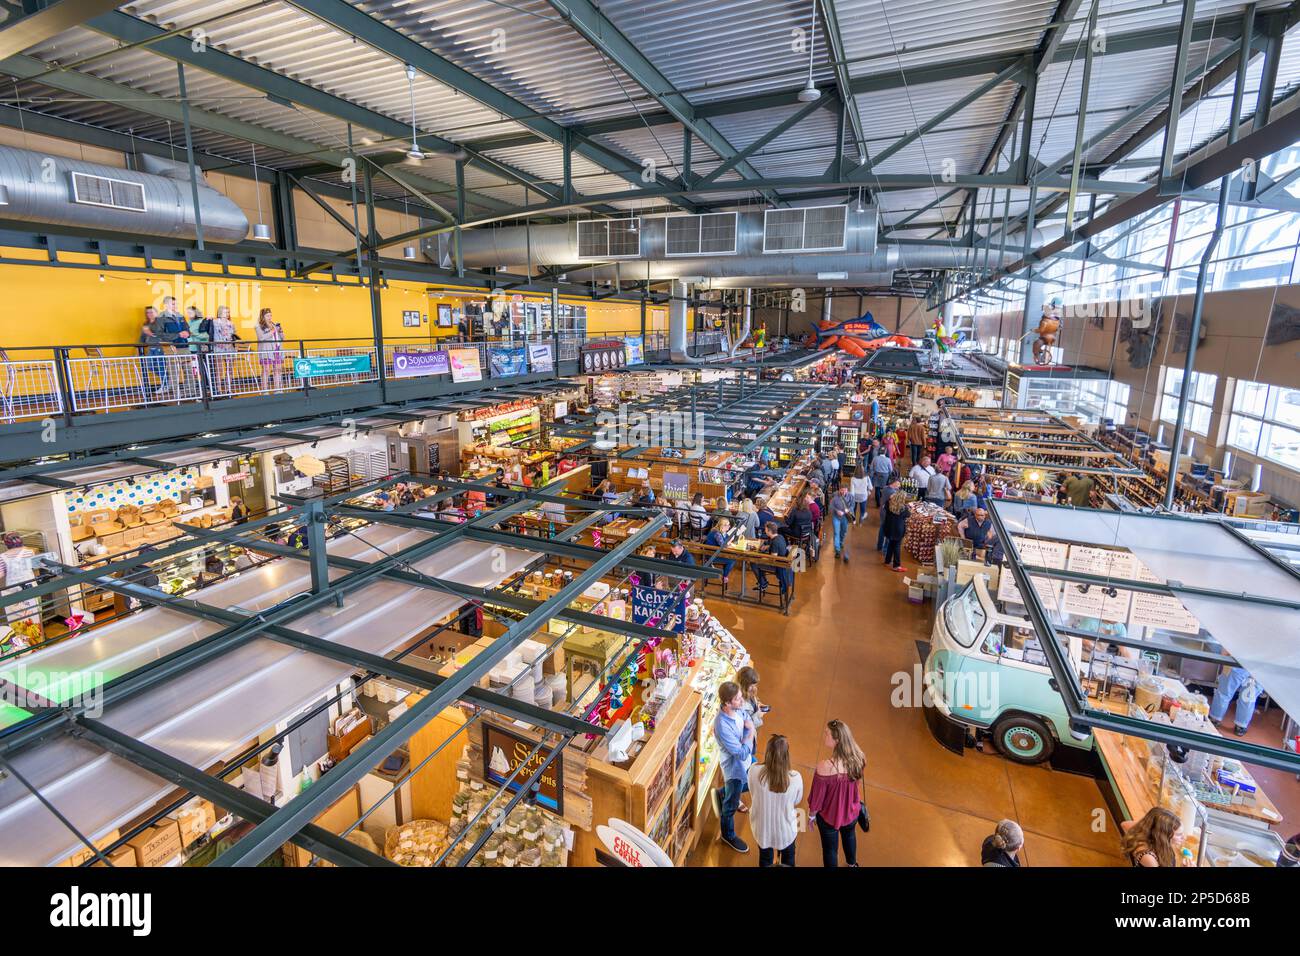 MILWAUKEE, WISCONSIN - 19 MAGGIO 2018: Acquirenti all'interno del mercato pubblico di Milwaukee. Il mercato è stato aperto nel 2005. Foto Stock